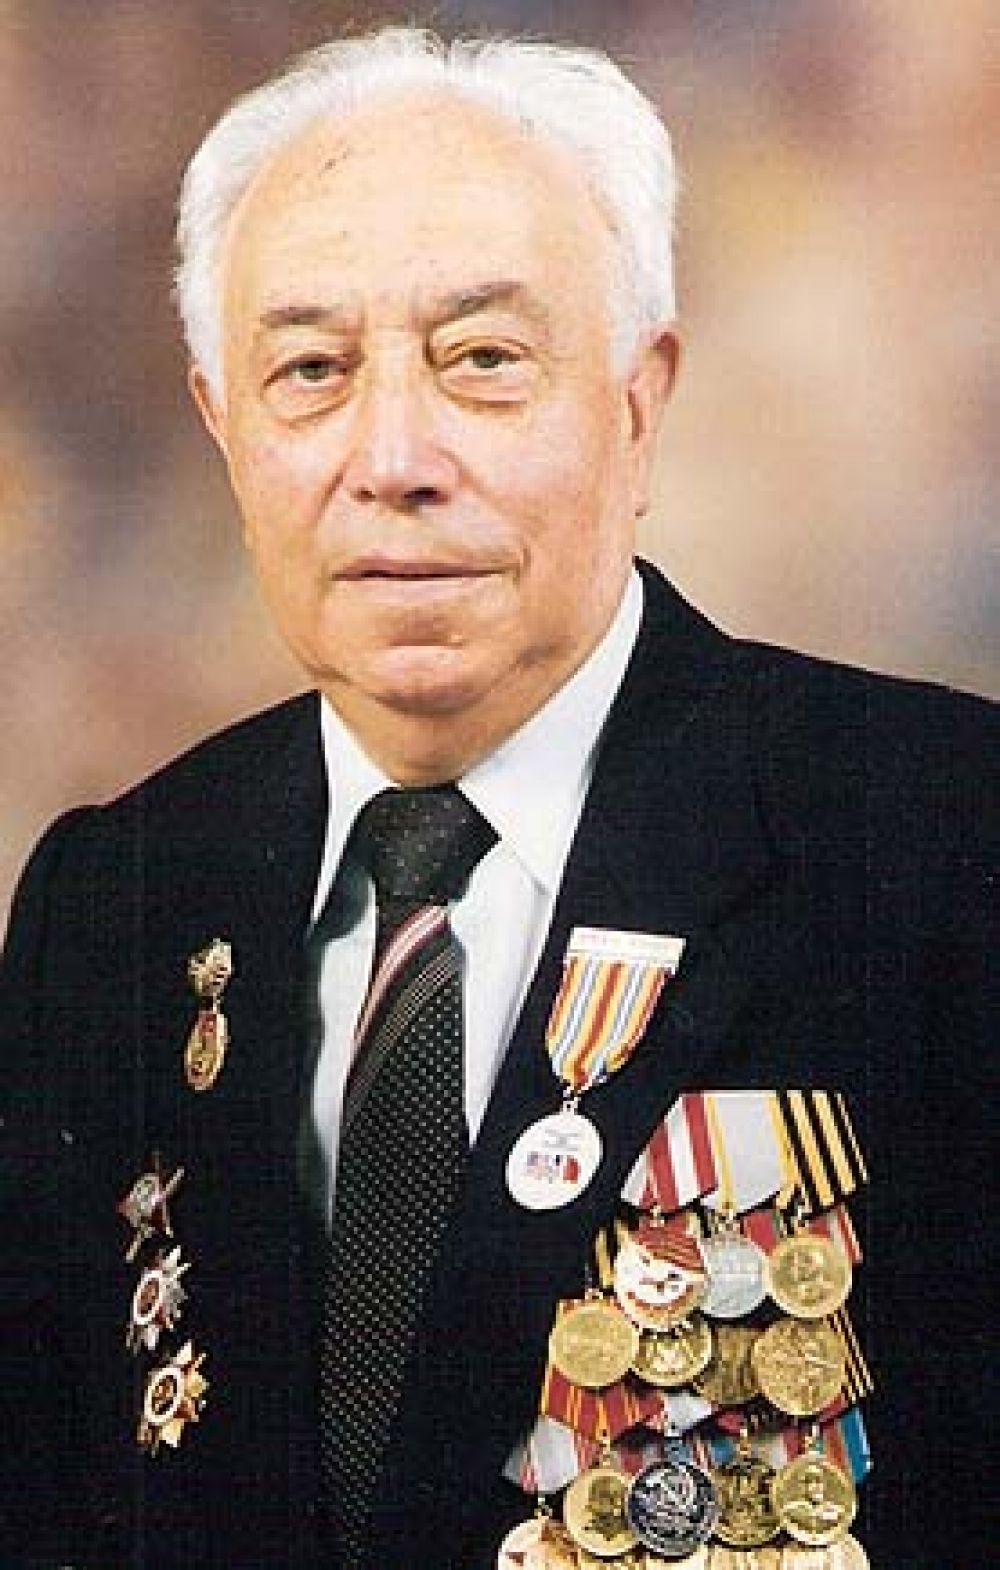 Пекарский Леонид Мотелевич служил фельдшером на воронежском фронте в 1942 году.